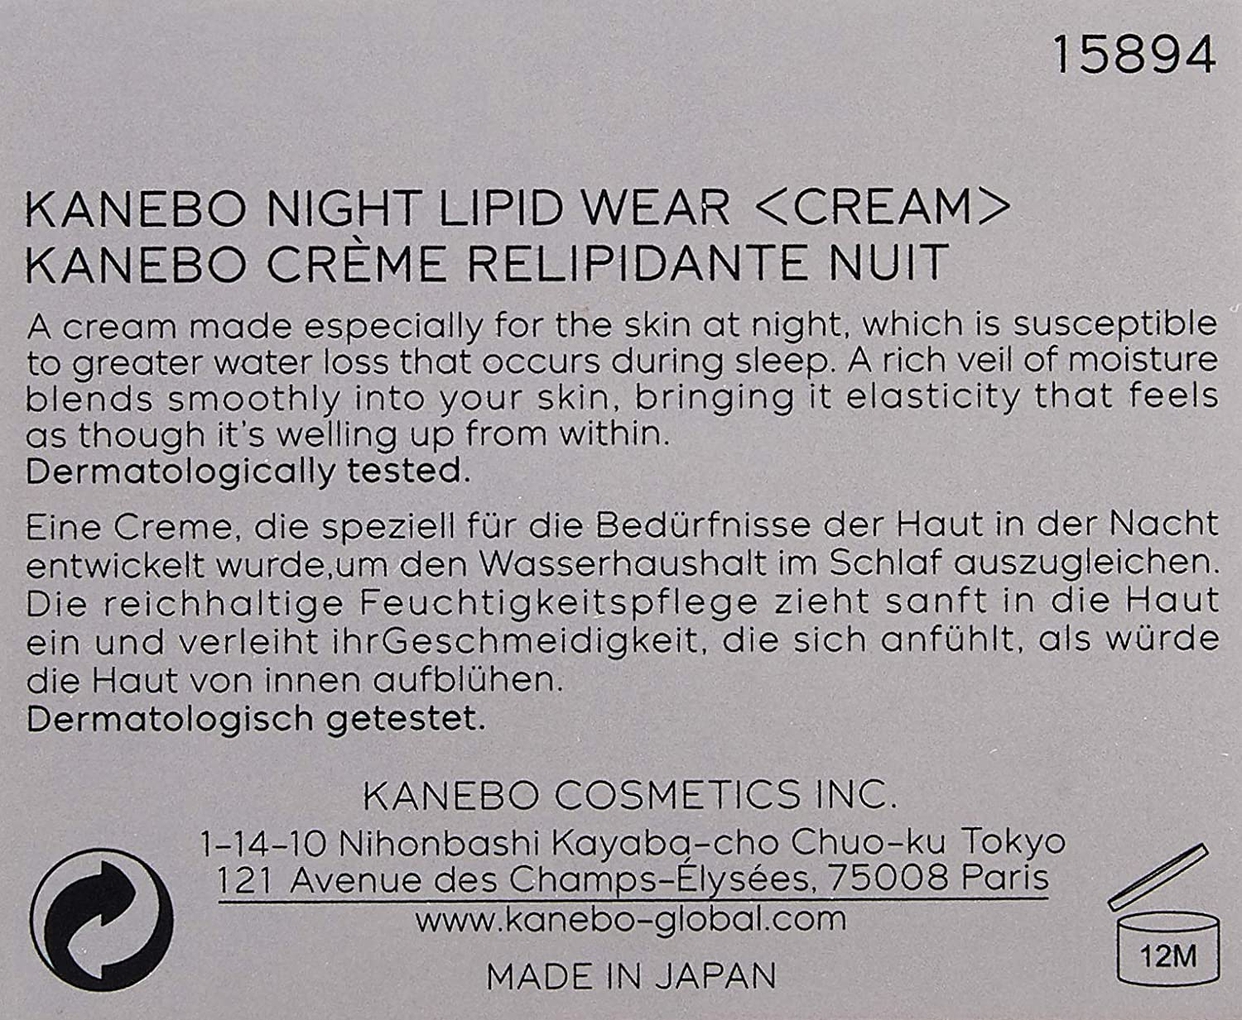 KANEBO(カネボウ) ナイト リピッド ウェアの商品画像サムネ3 